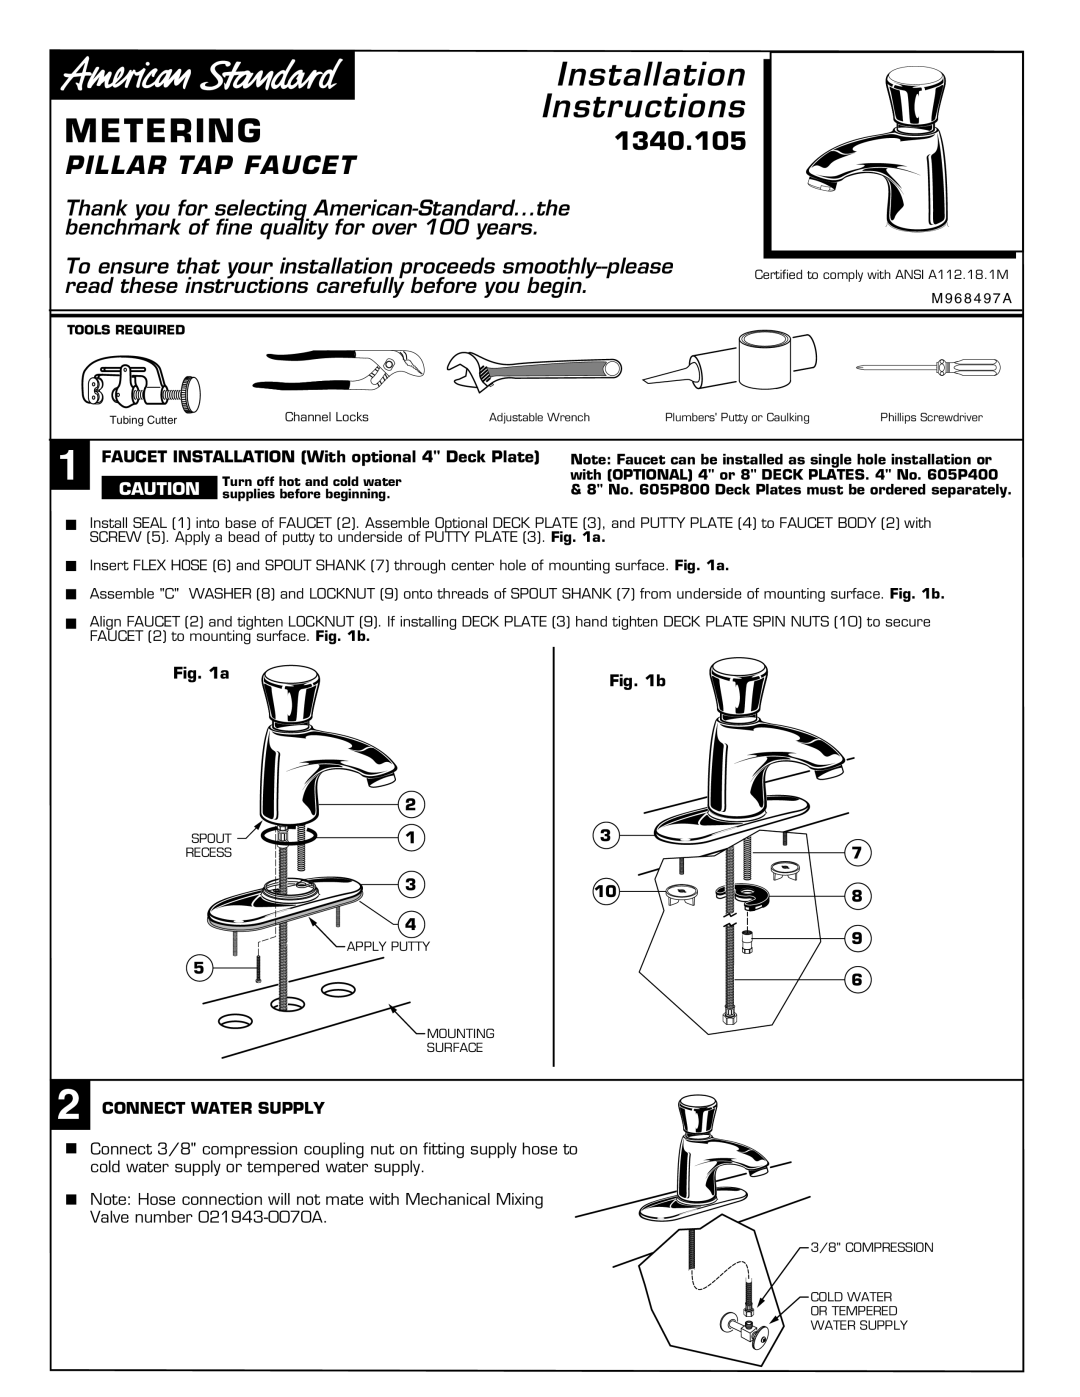 American Standard 1340.105 installation instructions Installation, Metering, Instructions, Pillar Tap Faucet 